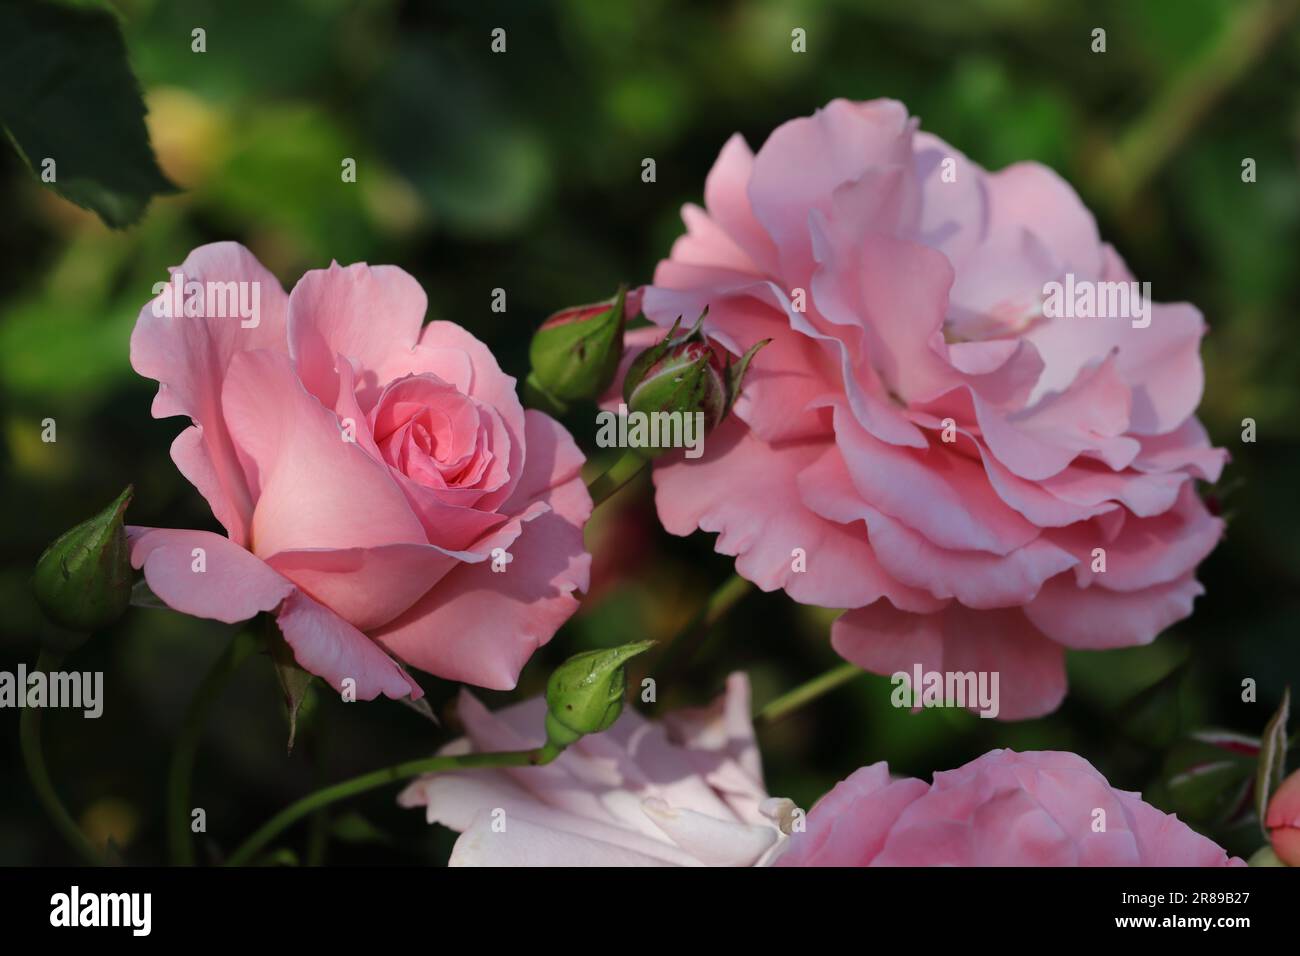 Gros plan d'un magnifique rosebud rose à moitié déplié à côté d'une fleur de rose pleine fleur, fond vert foncé flou Banque D'Images